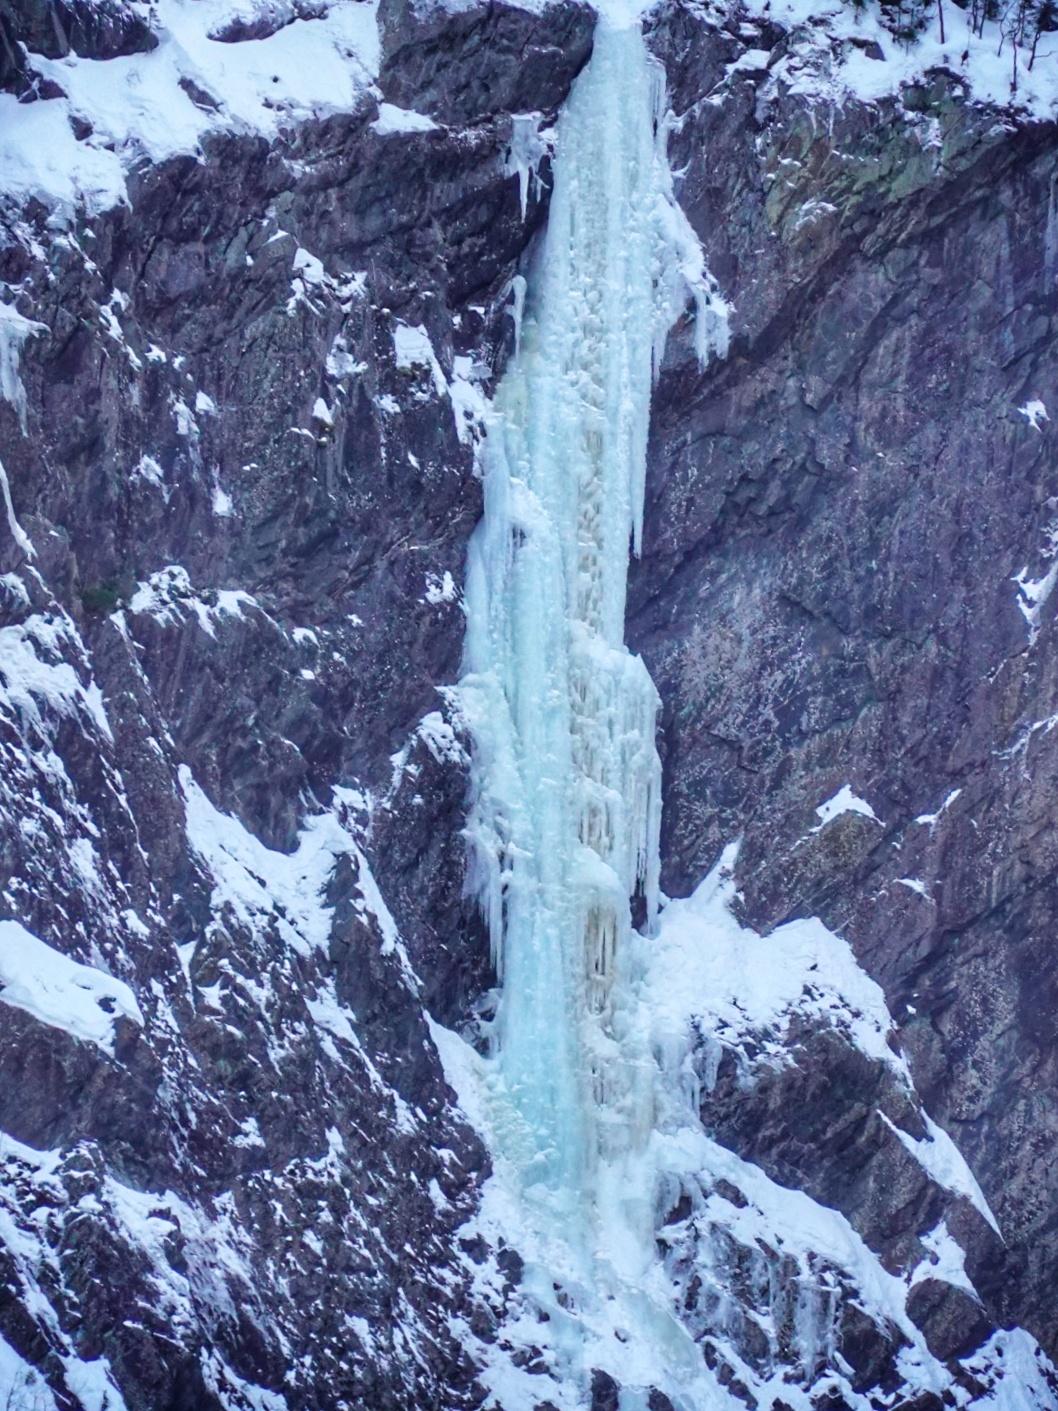 Norway ice climbing, Alessandro Ferrari, Giovanni Zaccaria